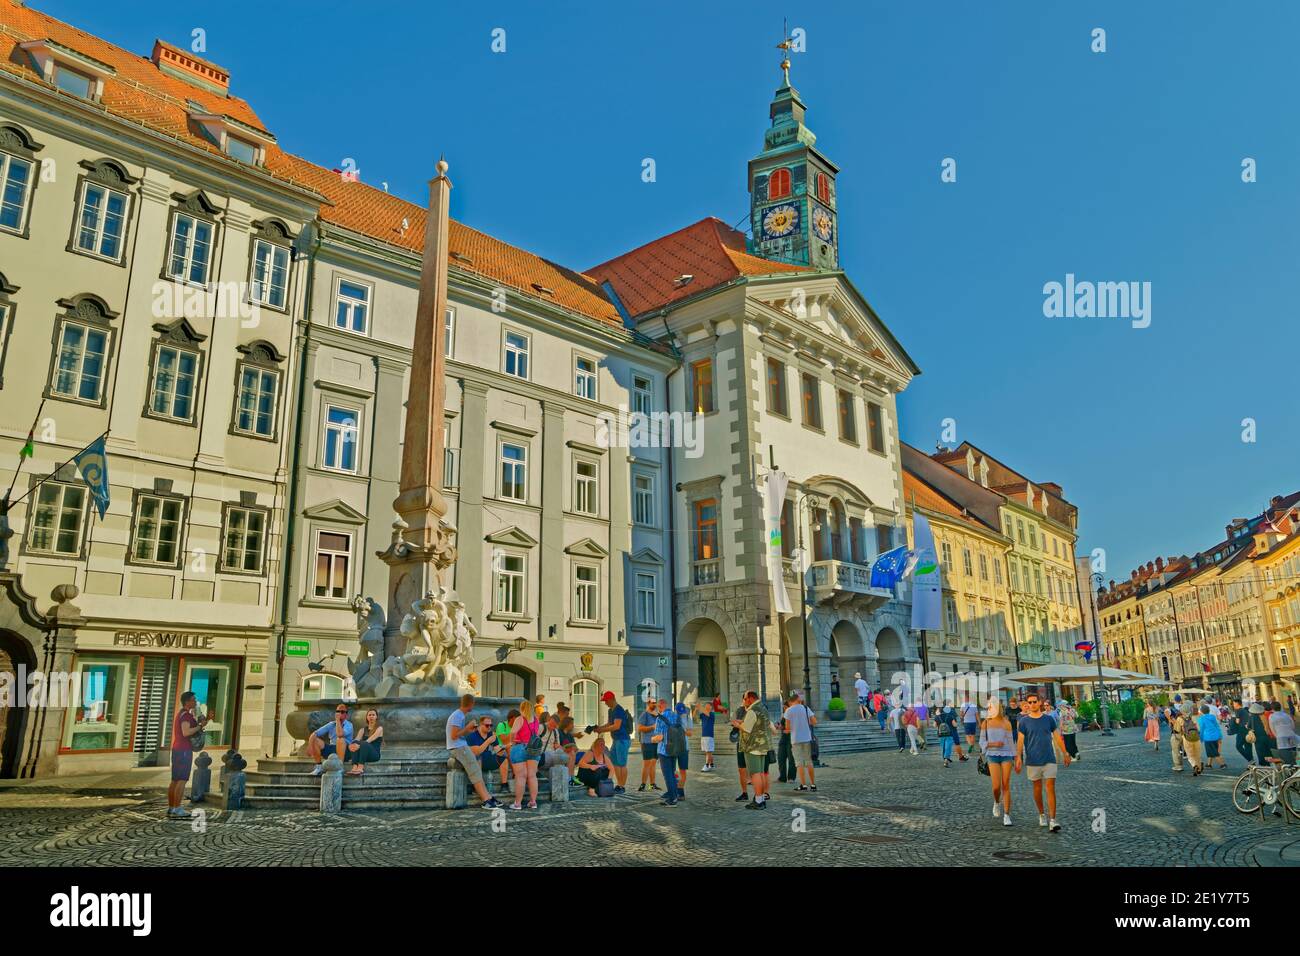 Robba-Brunnen auf dem Rathausplatz Stadtzentrum von Ljubljana, Hauptstadt Sloweniens. Stockfoto